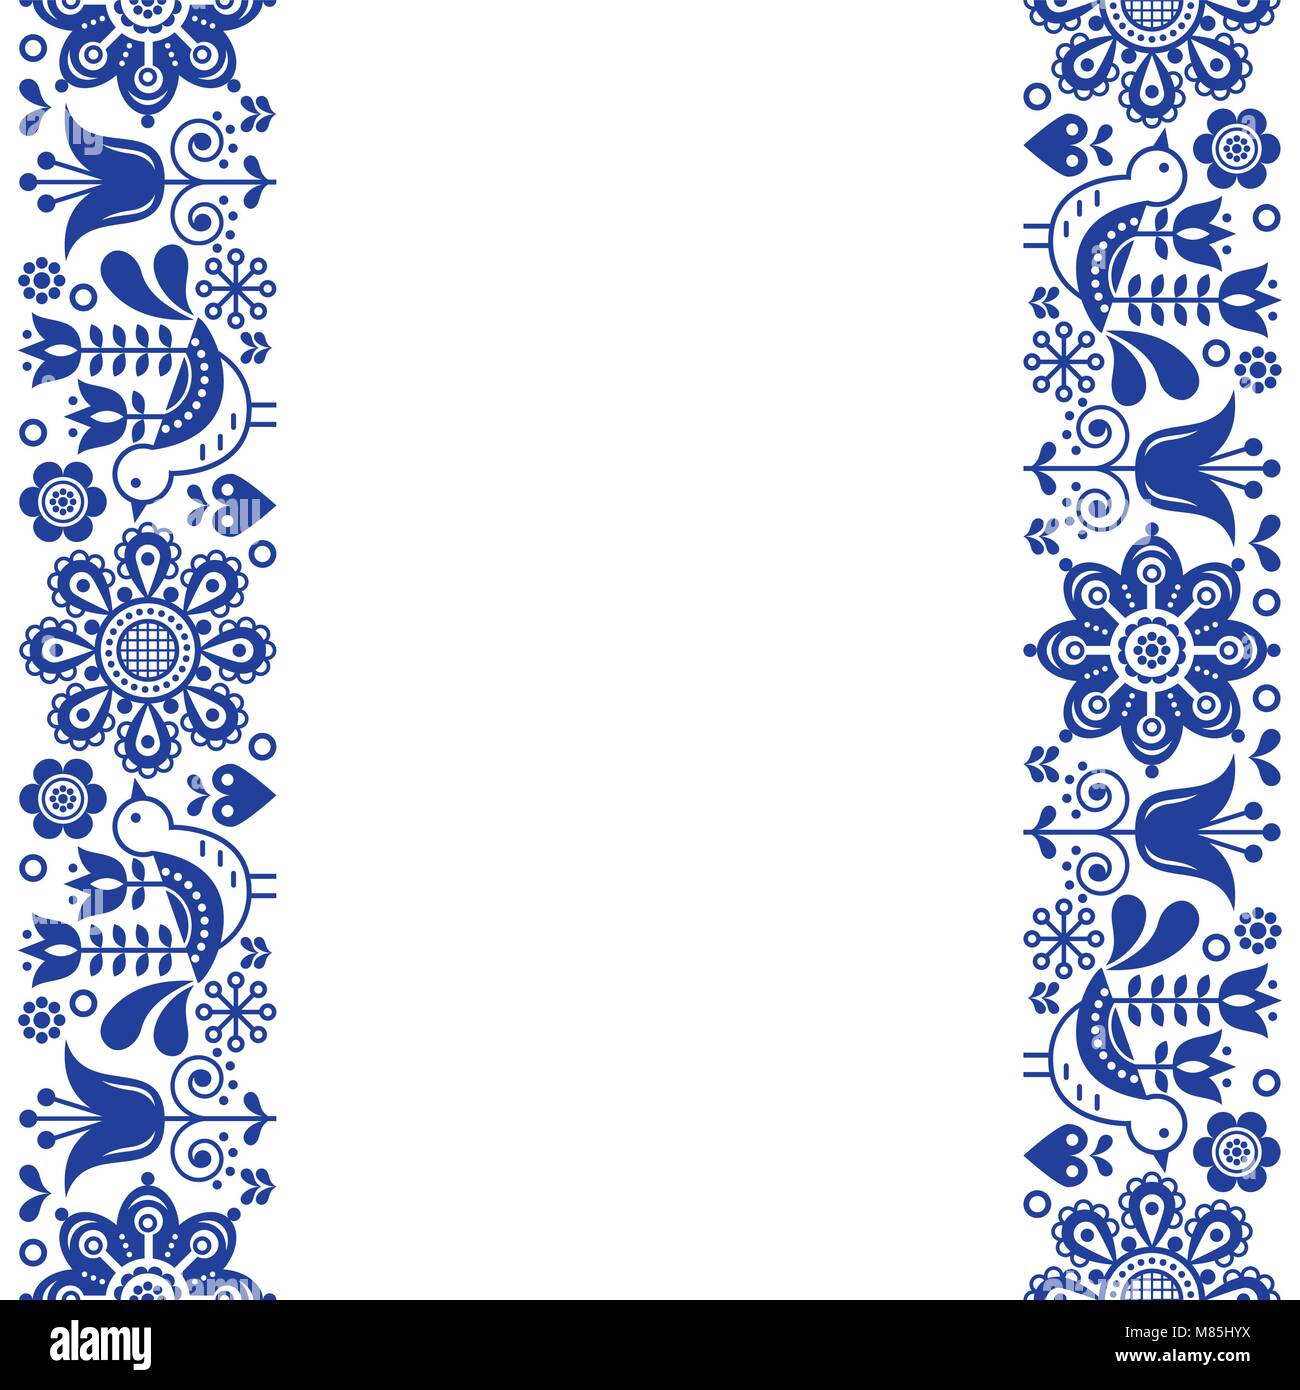 Skandinavische Grußkarte Design, Volkskunst retro vektor design, Ornament mit Vögel und Blumen in marine blau - vertikale Streifen oder Grenze Stock Vektor